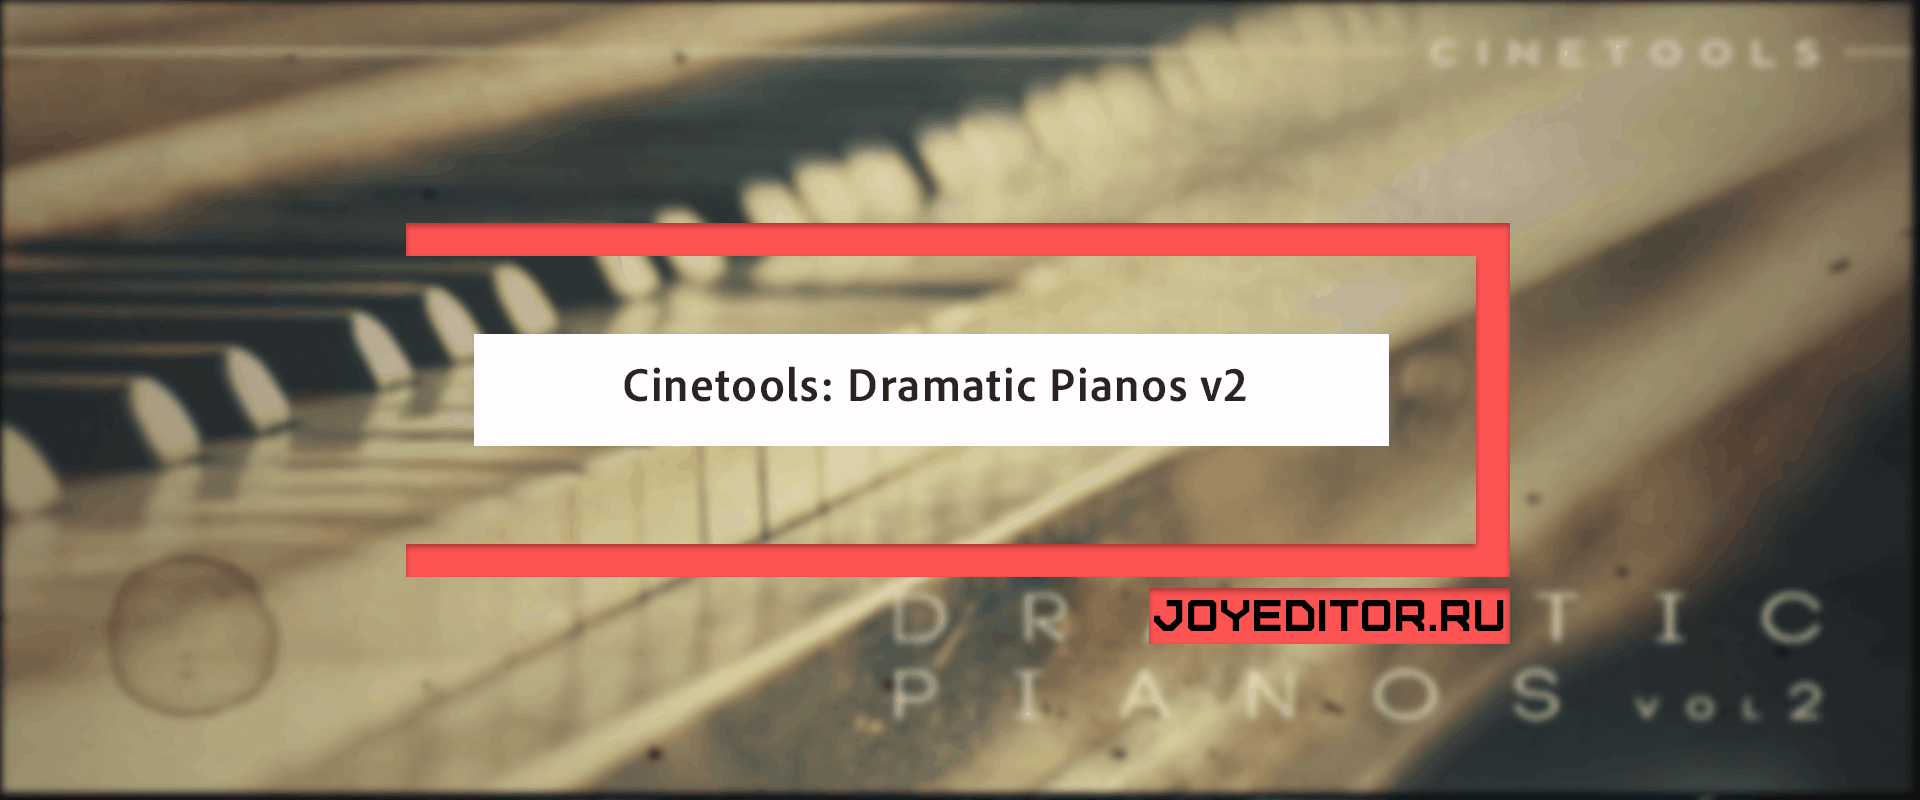 Cinetools: Dramatic Pianos v2